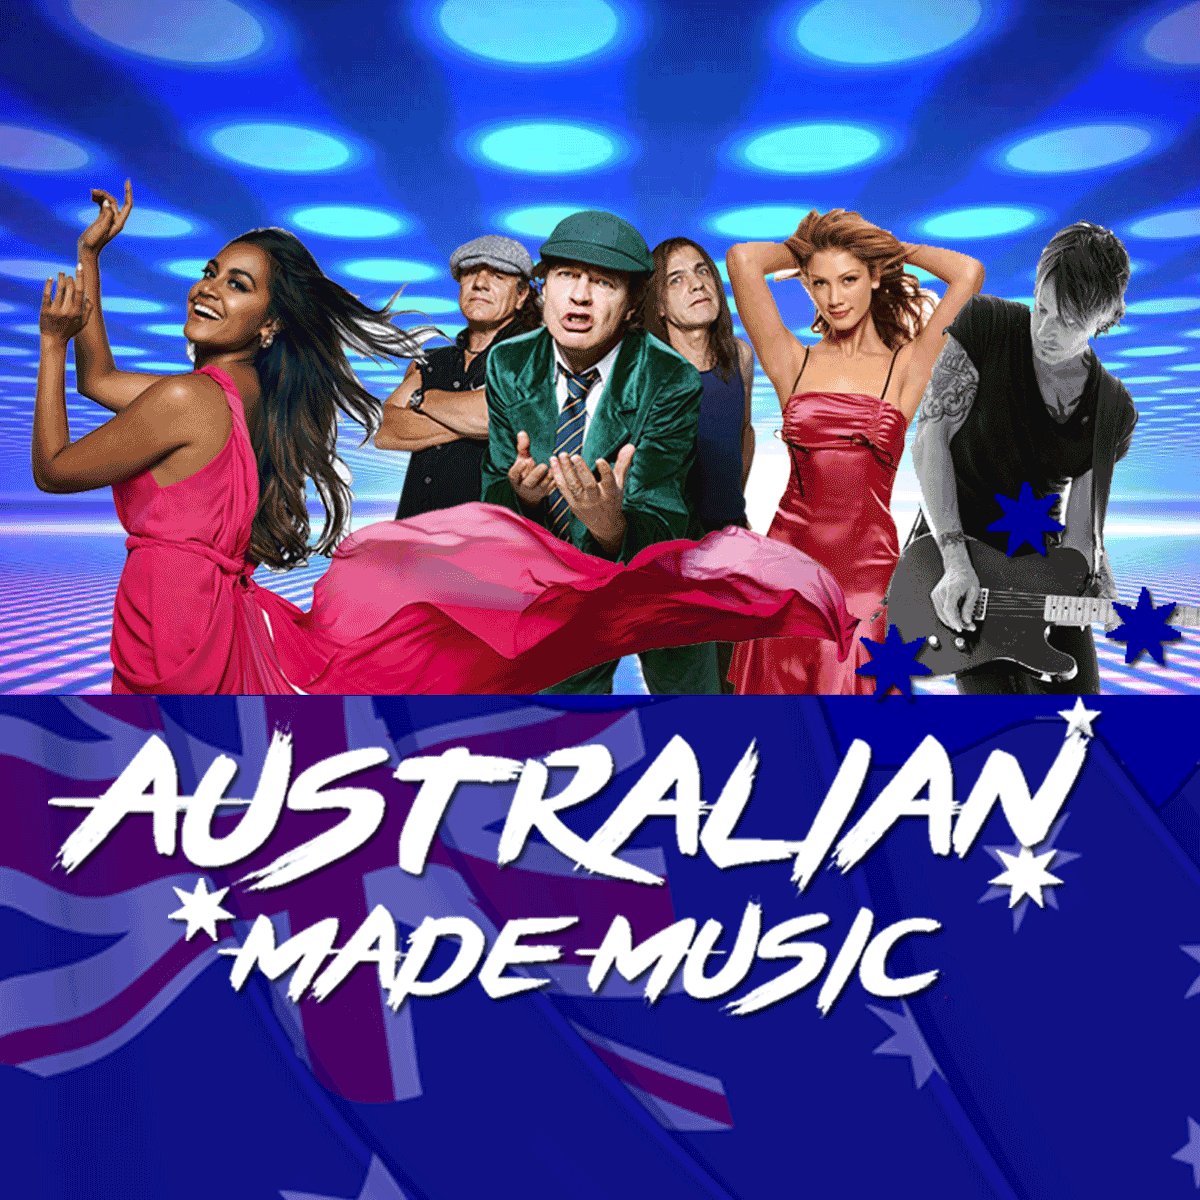 AustralianMadeMusic